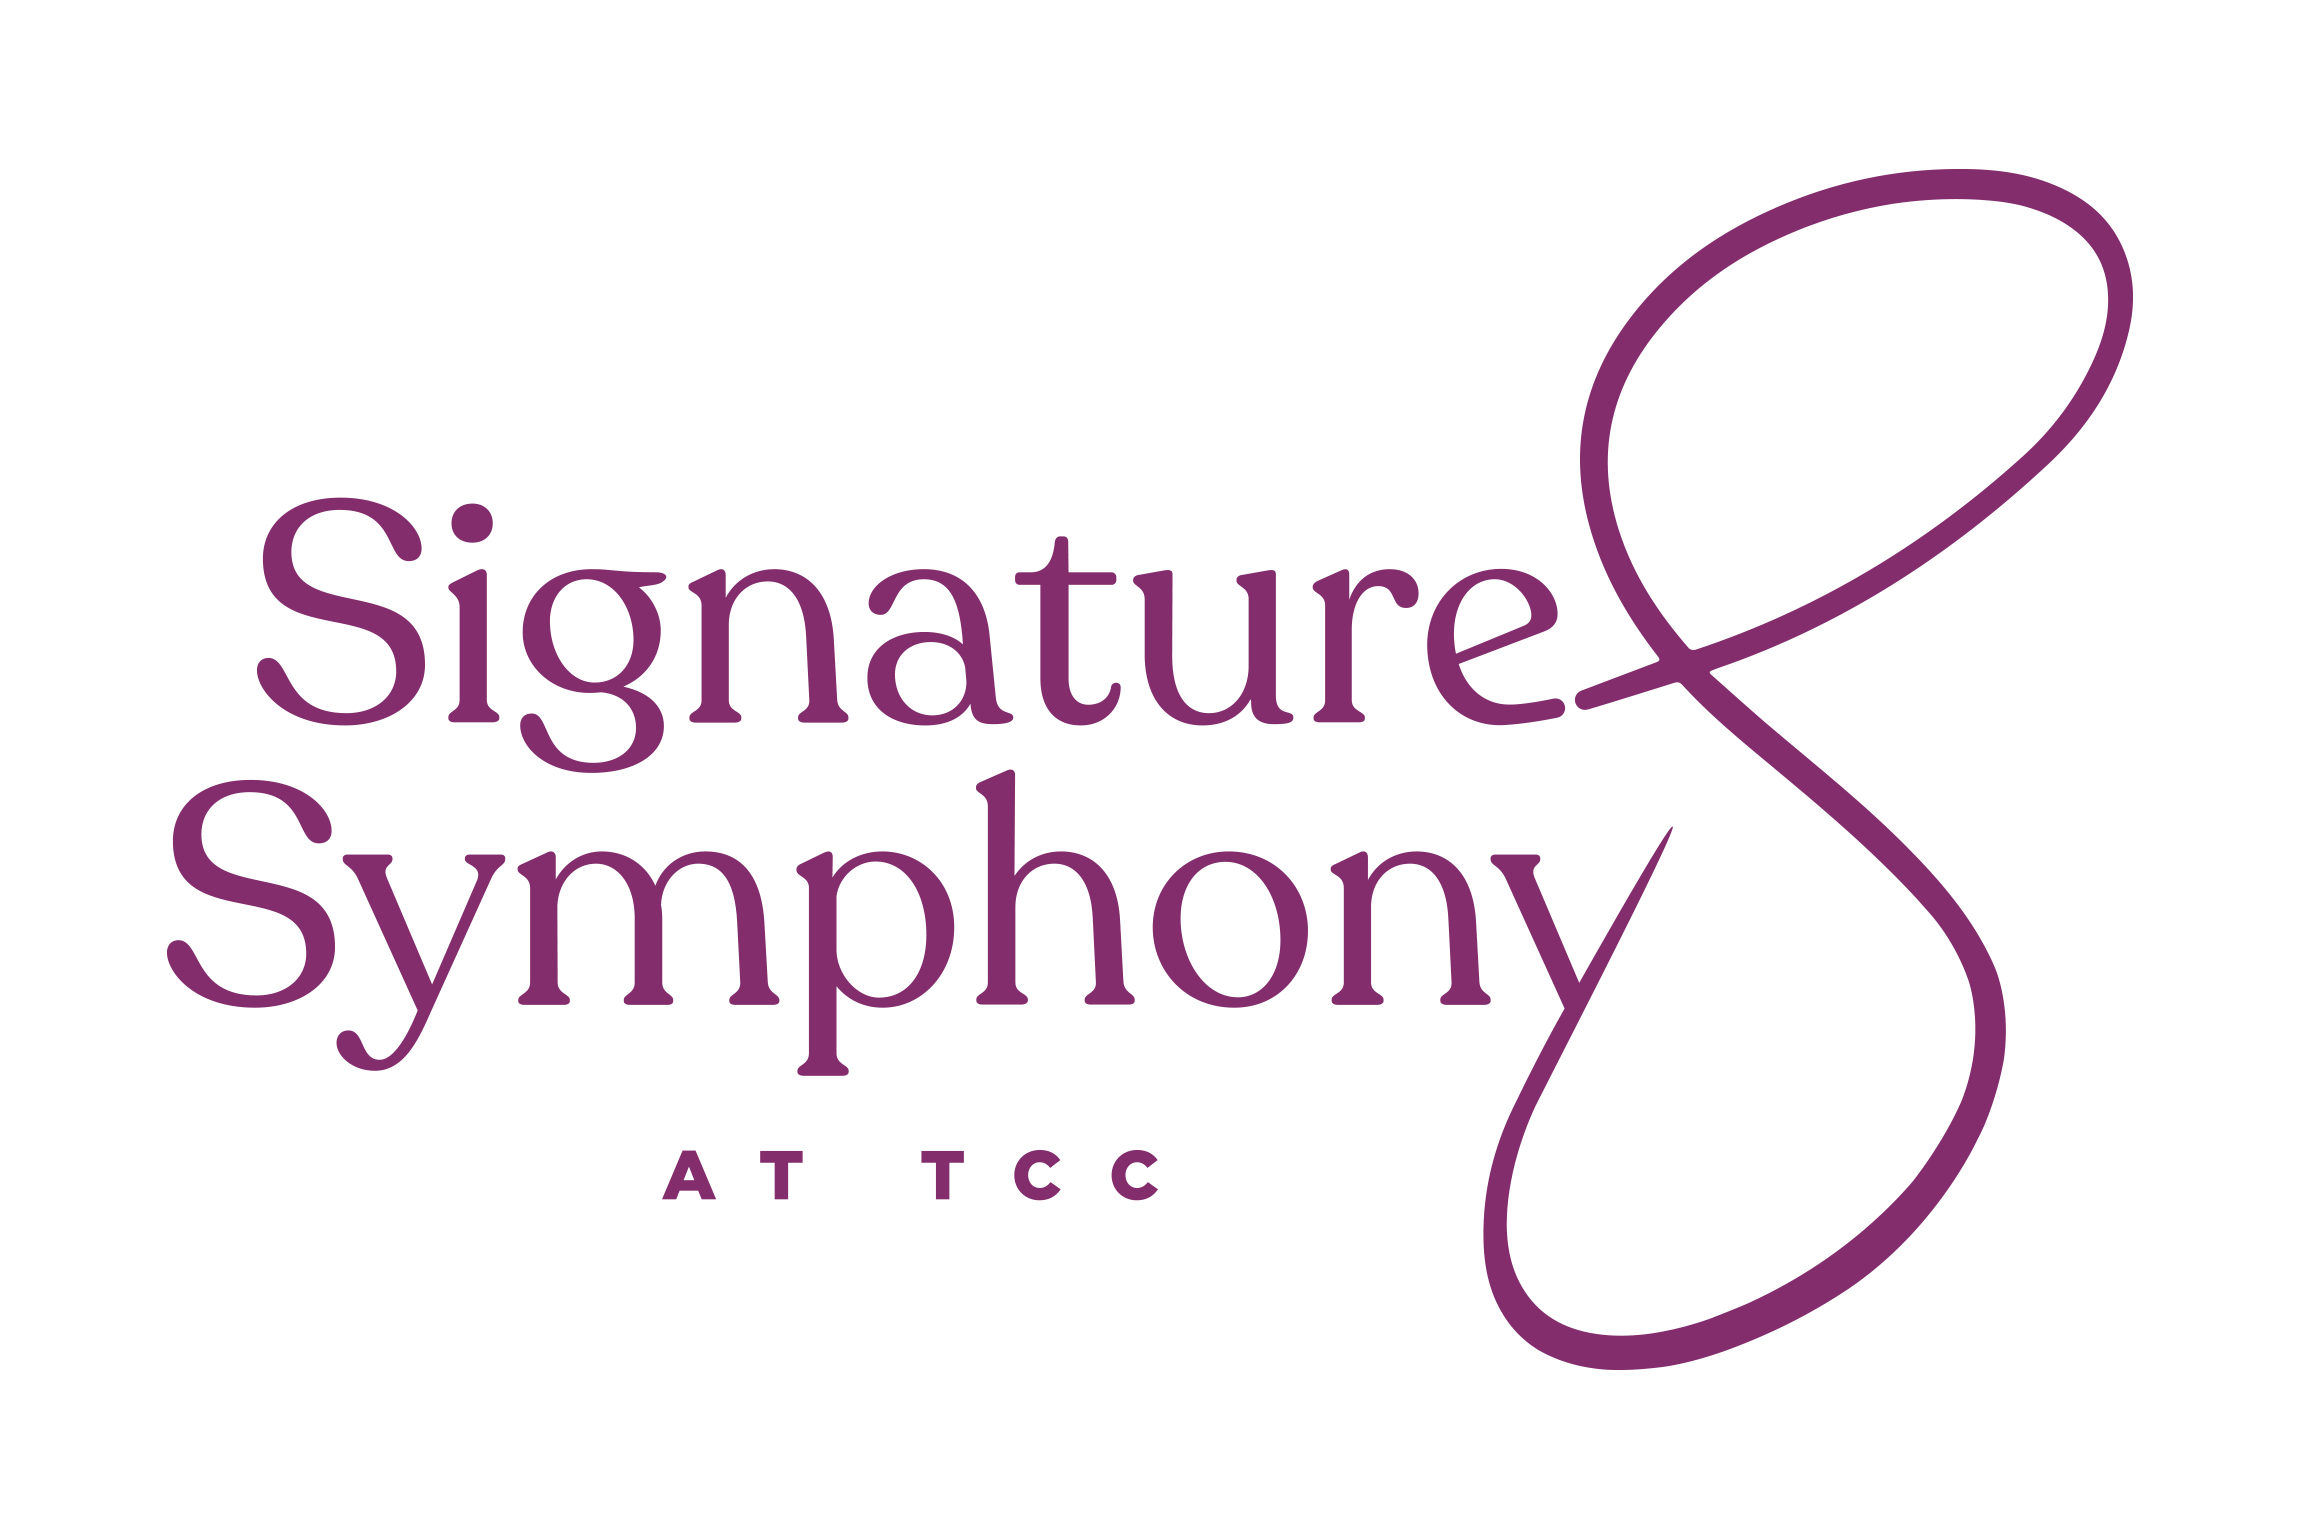 Signature Symphony at TCC